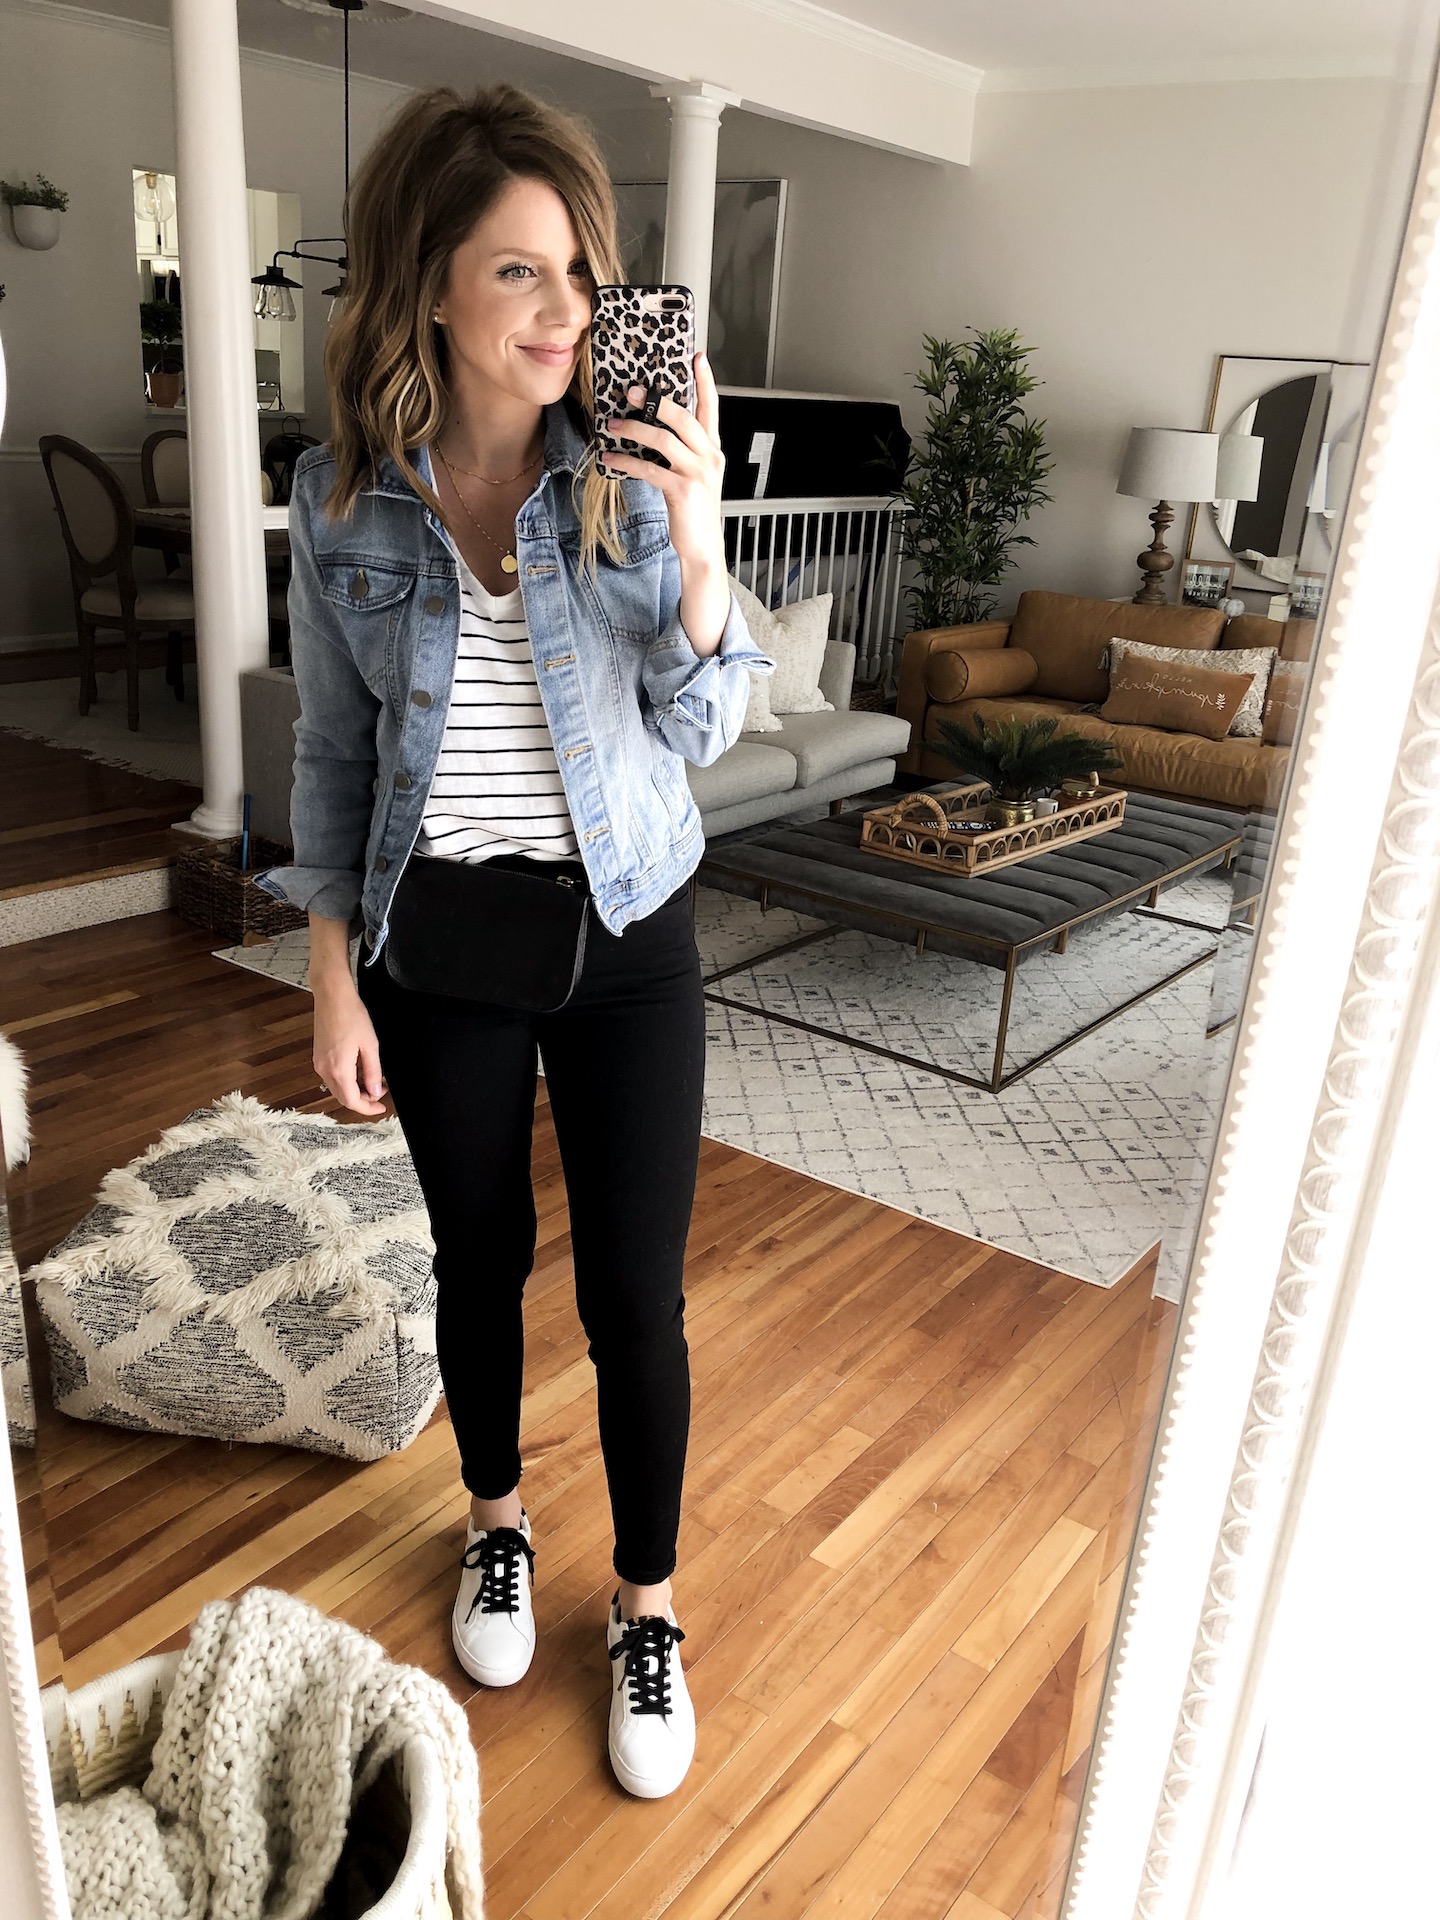 Shop Your Closet: Black Jeans - Lauren Loves